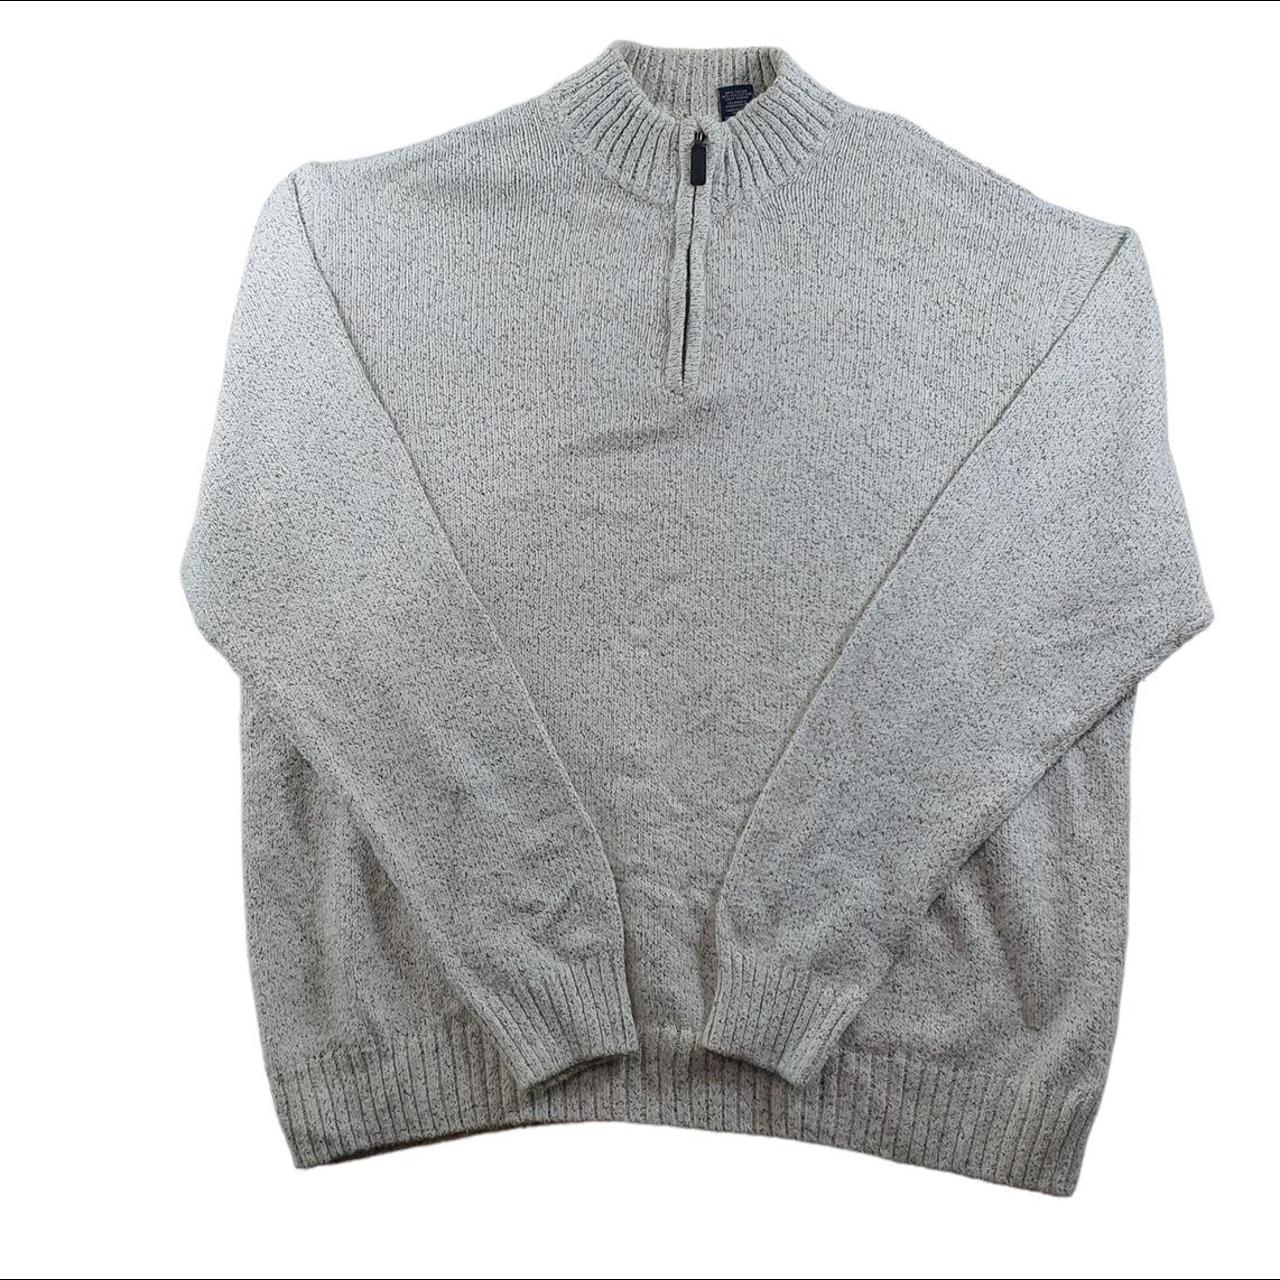 Chaps Ralph Lauren Sweatshirt Adult XXL 2XL Grey... - Depop